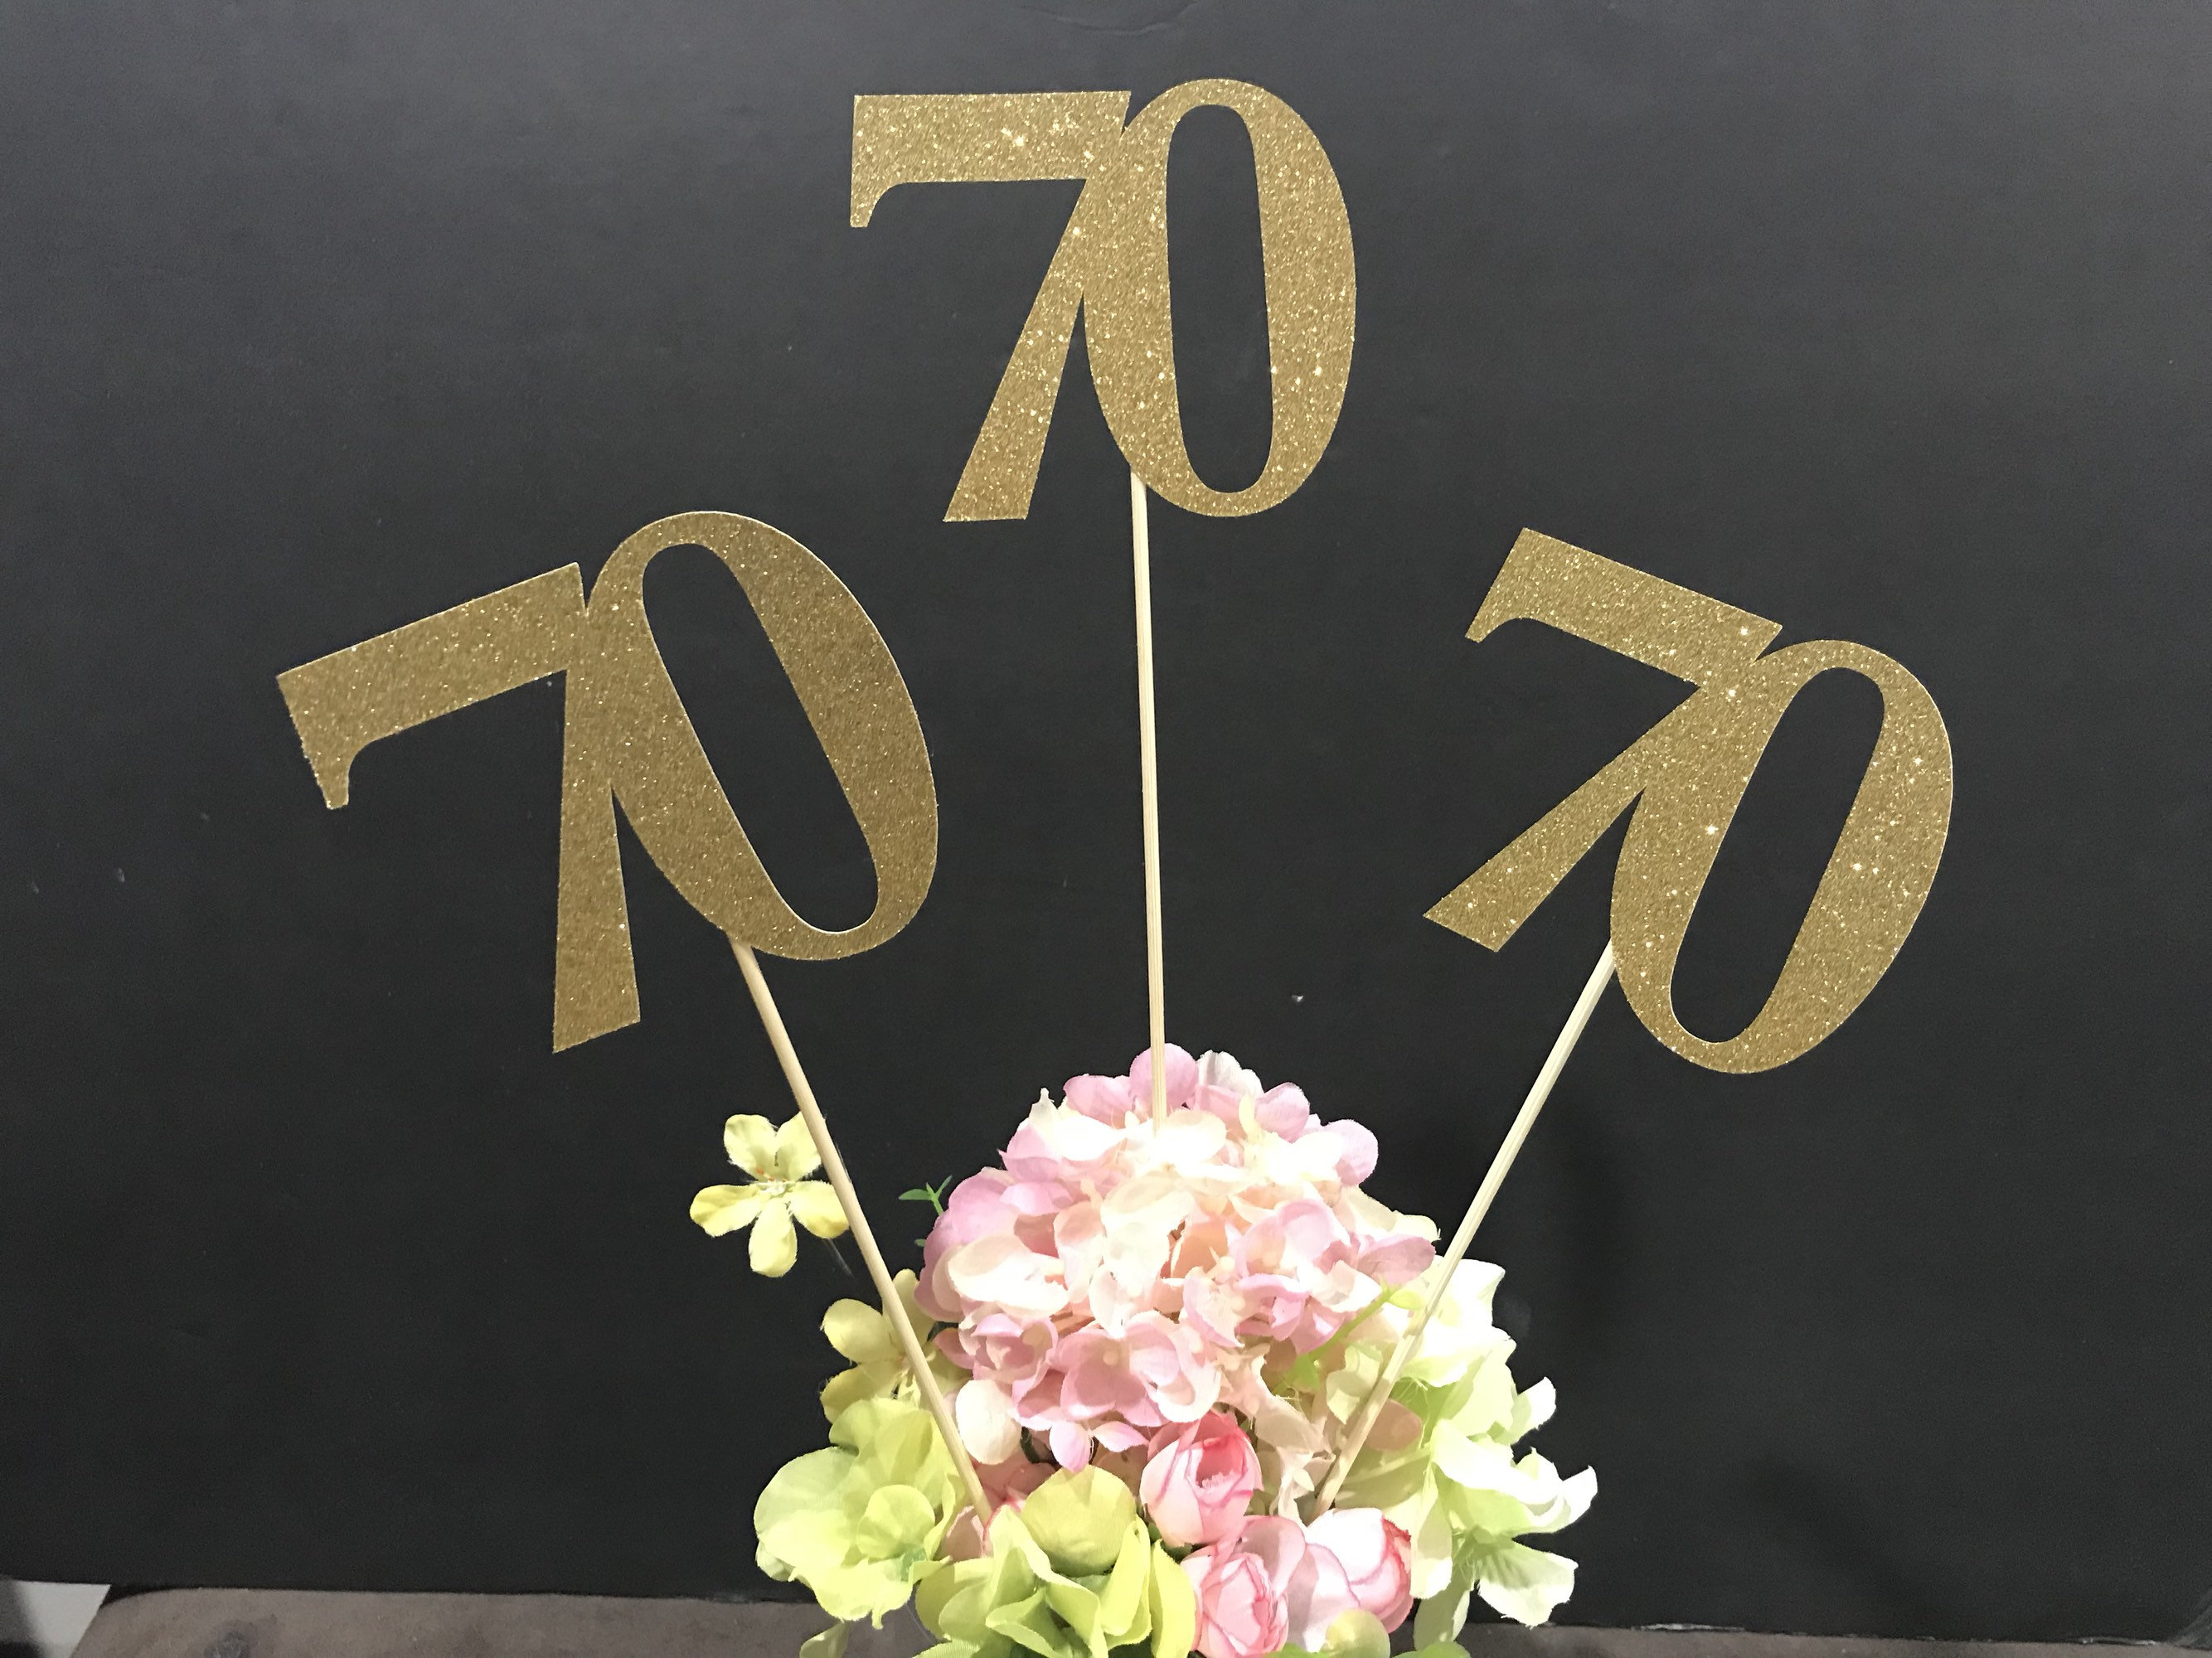 70th-birthday-decoration-70th-birthday-centerpiece-sticks-glitter